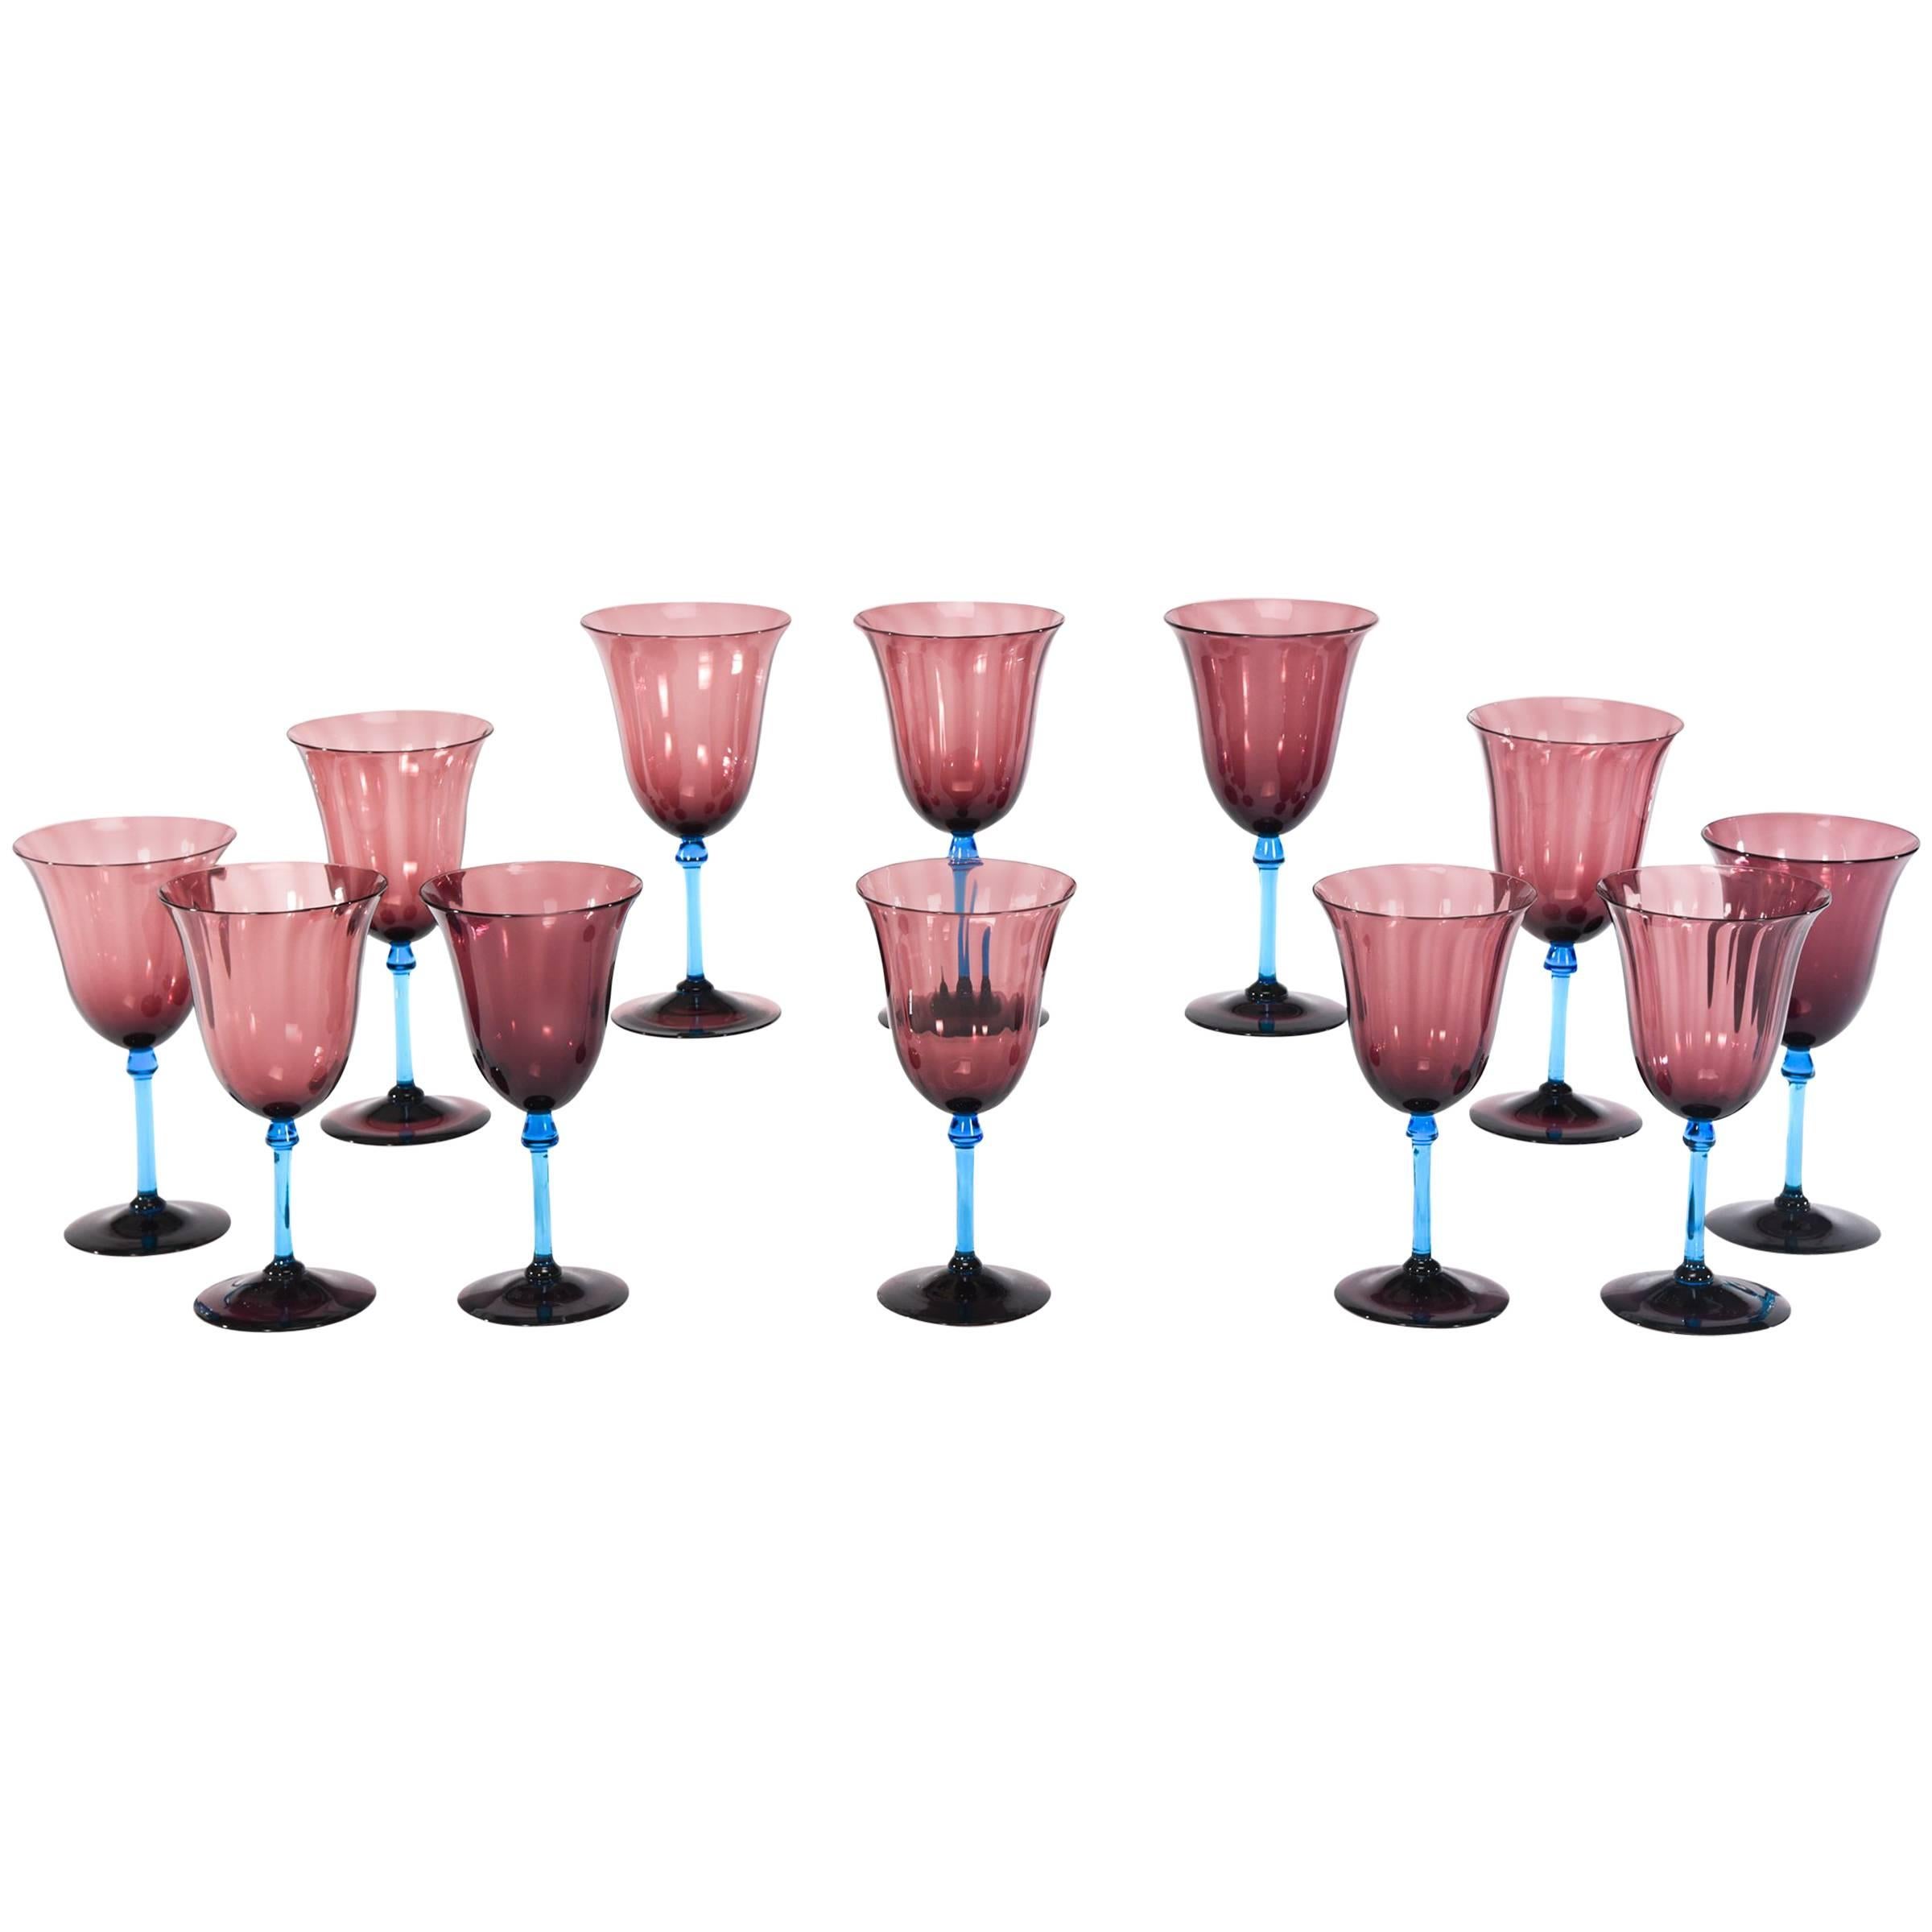 Set of 12 Steuben Handblown Optic Ribbed Amethyst Goblets with Celeste Blue Stem For Sale